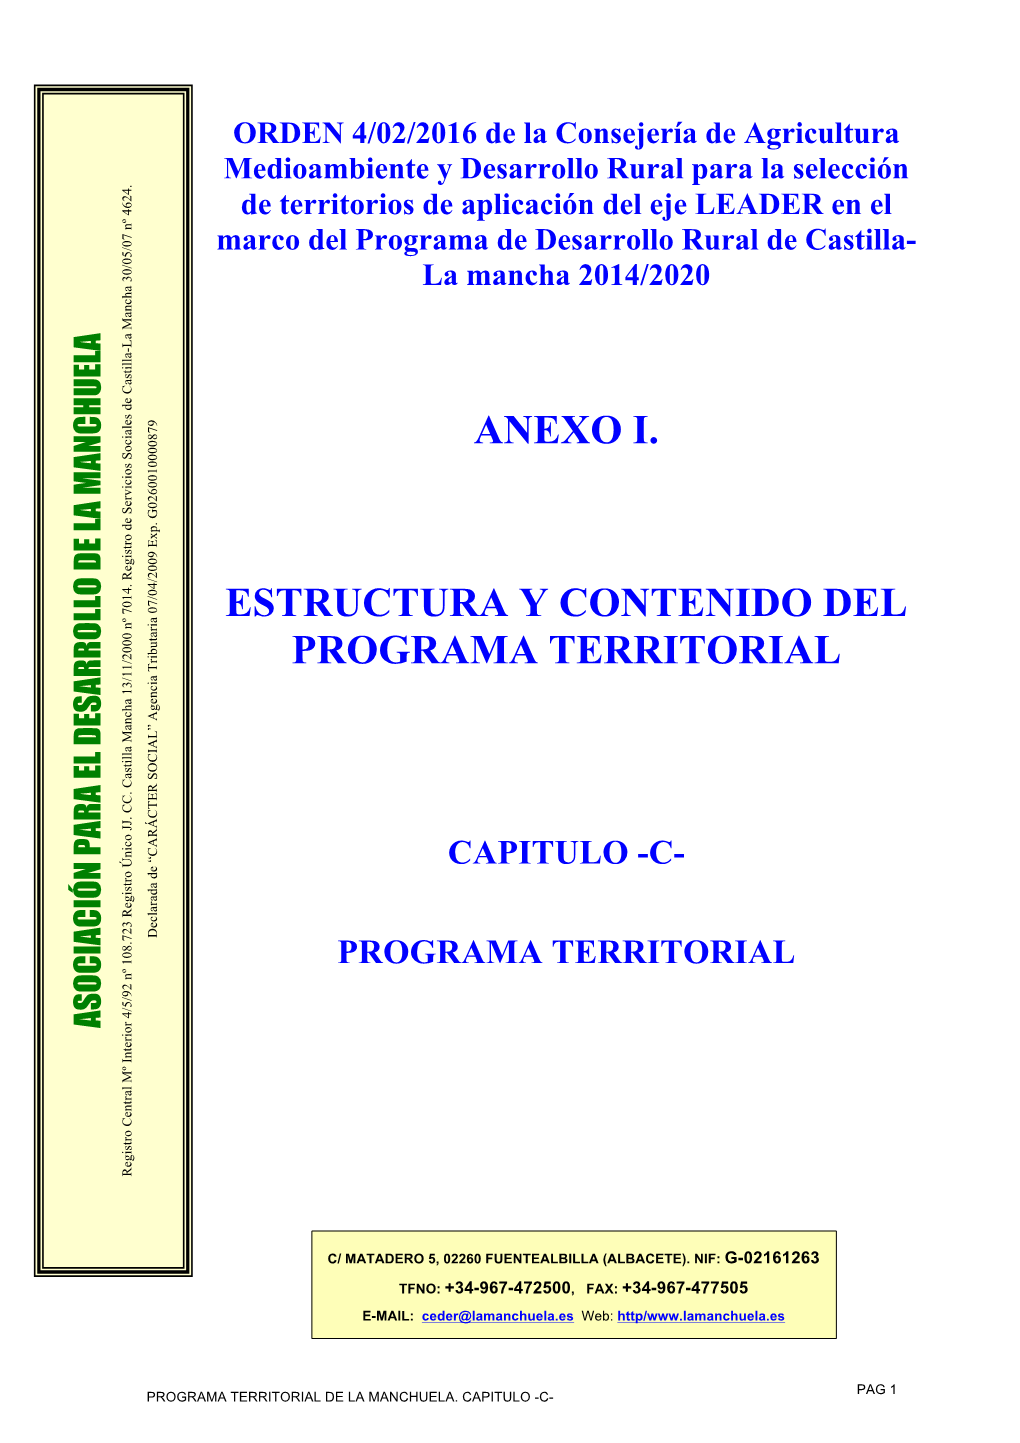 Anexo I. Estructura Y Contenido Del Programa Territorial